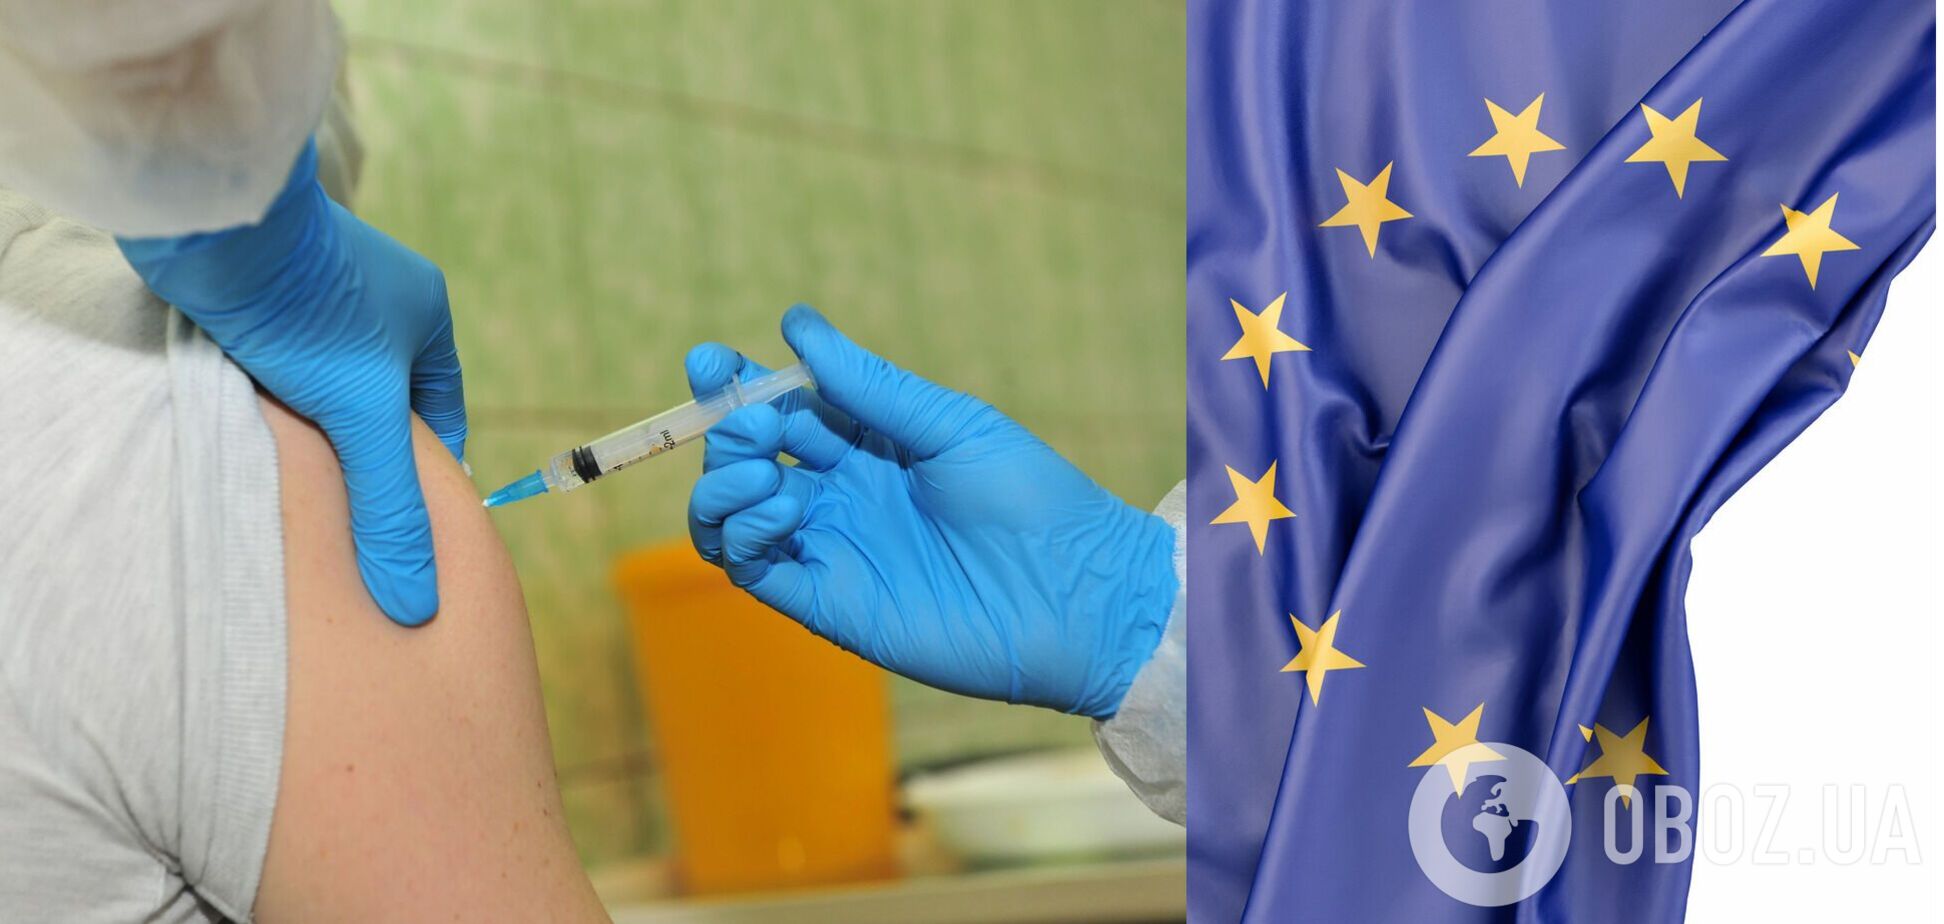 ЄС досяг мети щодо вакцинації